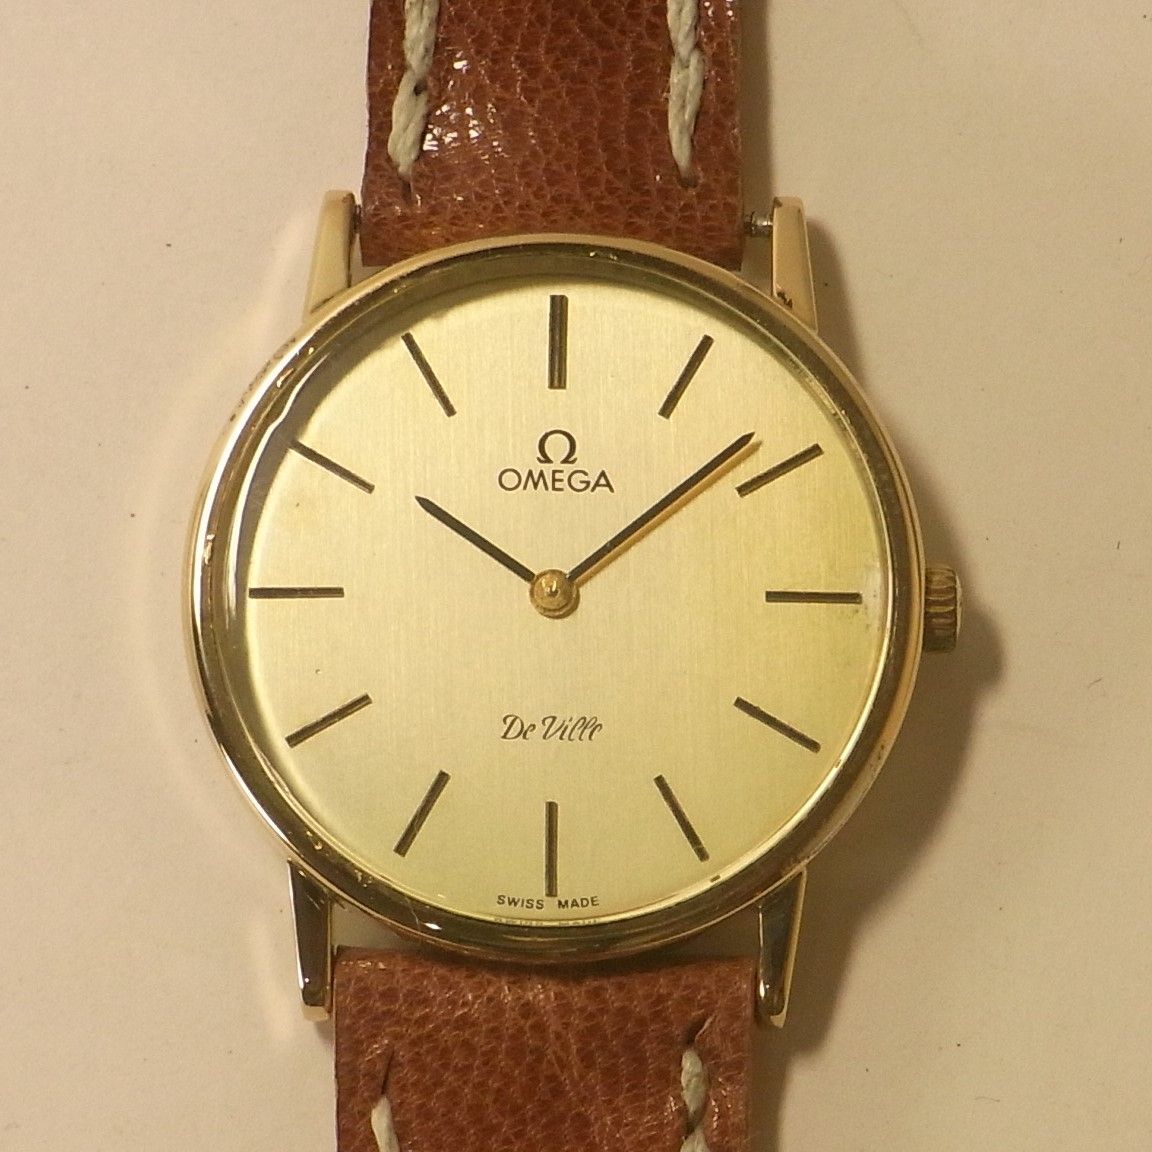 OMEGA/オメガ】Deville/デビルcal.1478 アンティーク腕時計 - 時計